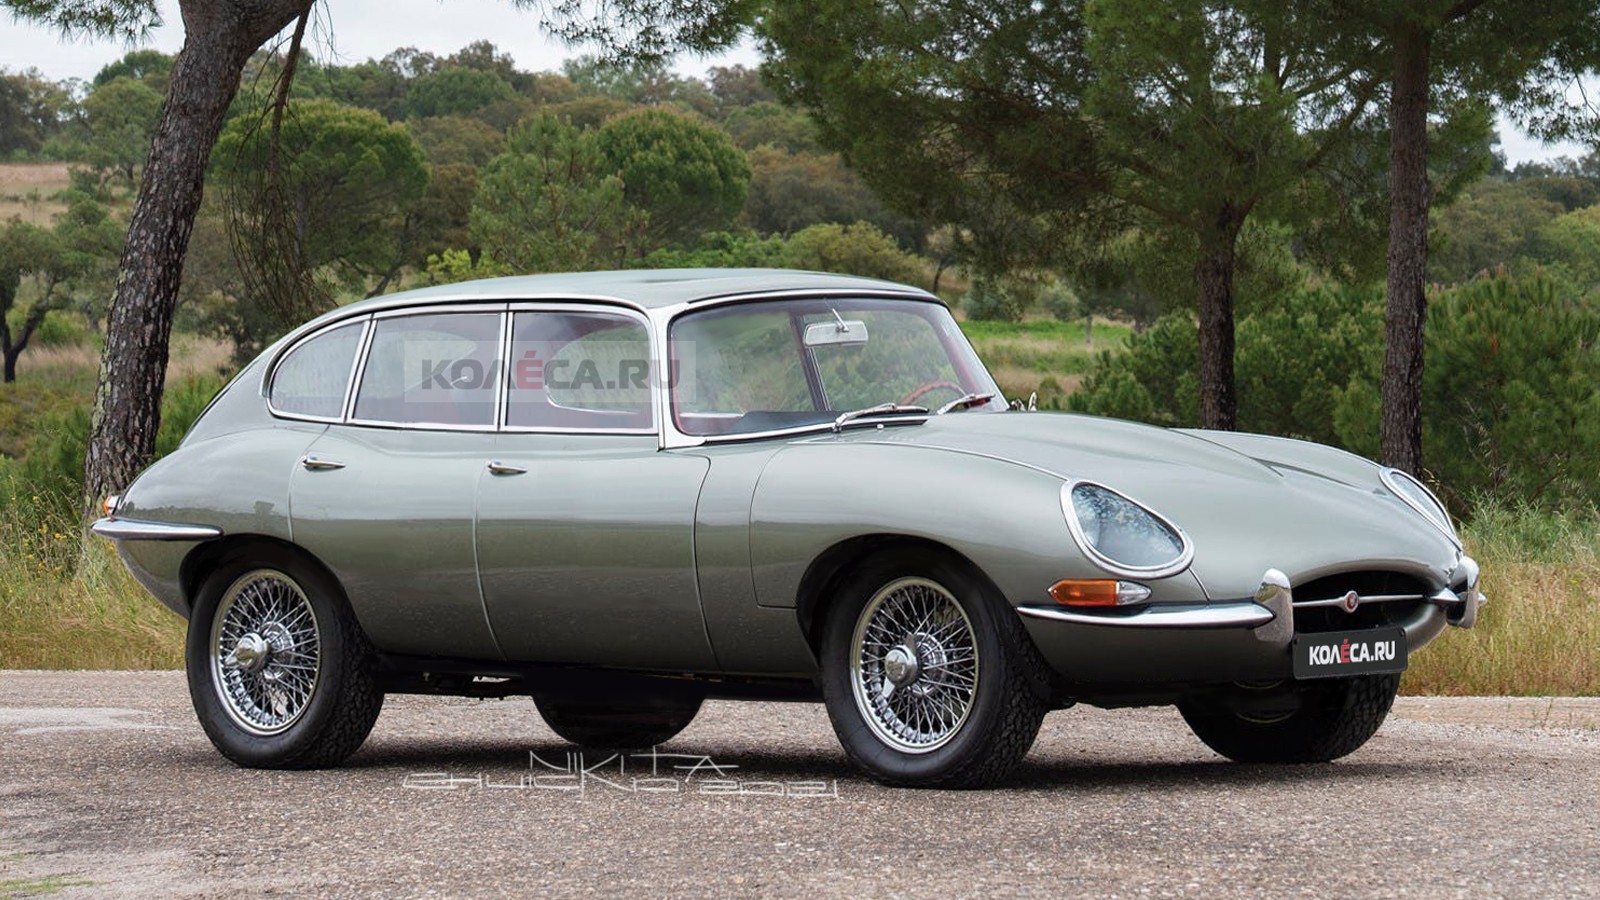 Кроссовер Jaguar F-Pace 60-х годов: каким он мог быть